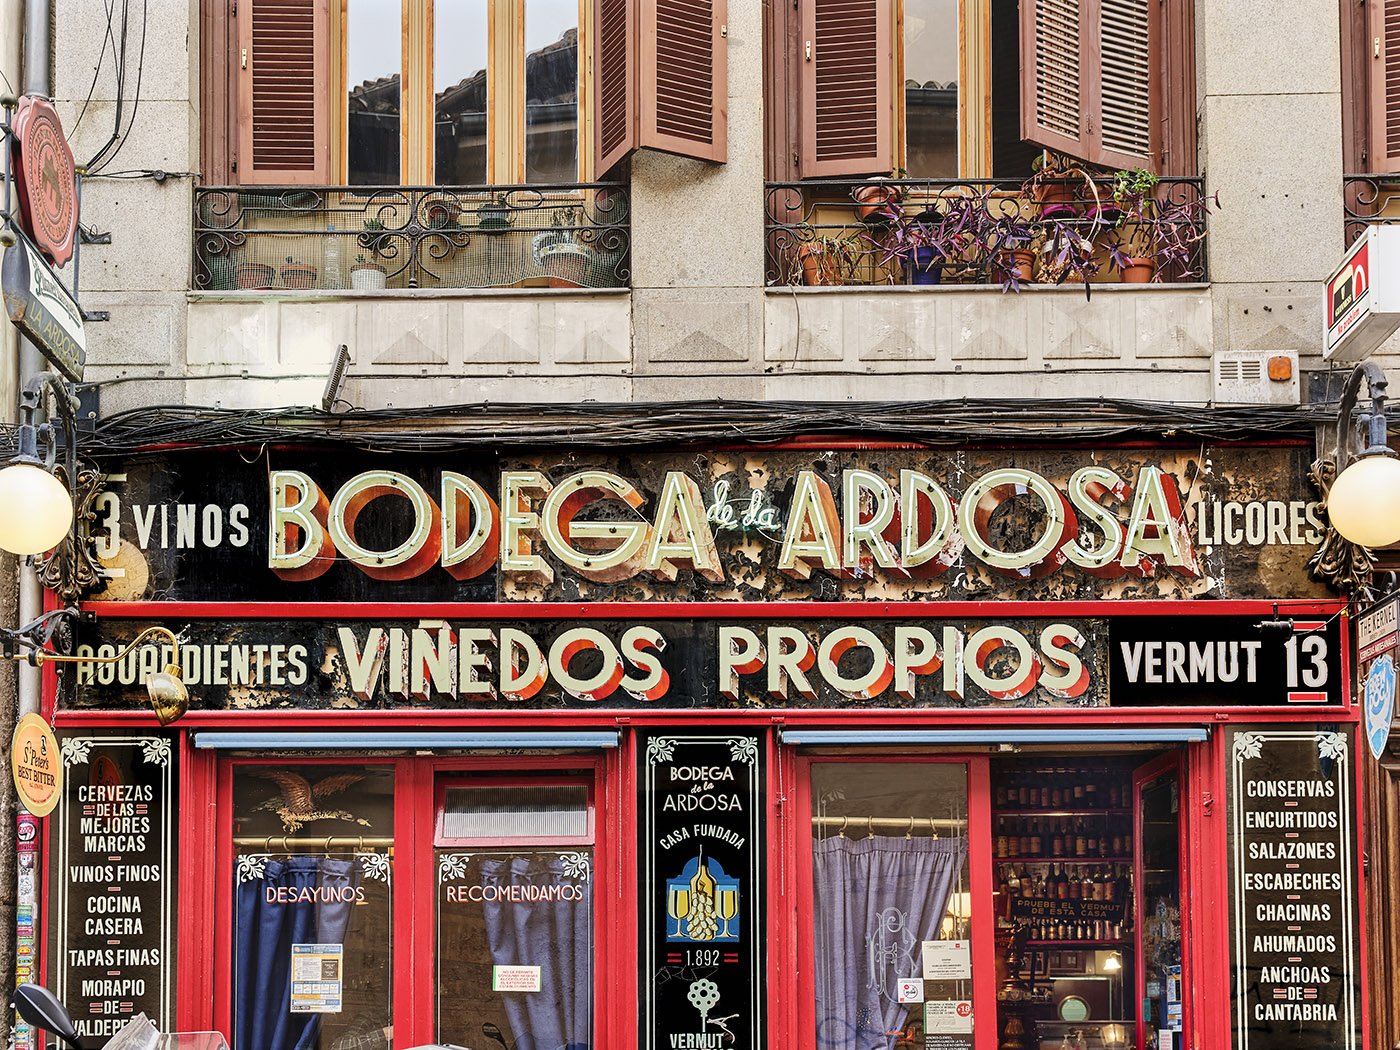 Bodega de La Ardosa, Visit Madrid, Spain